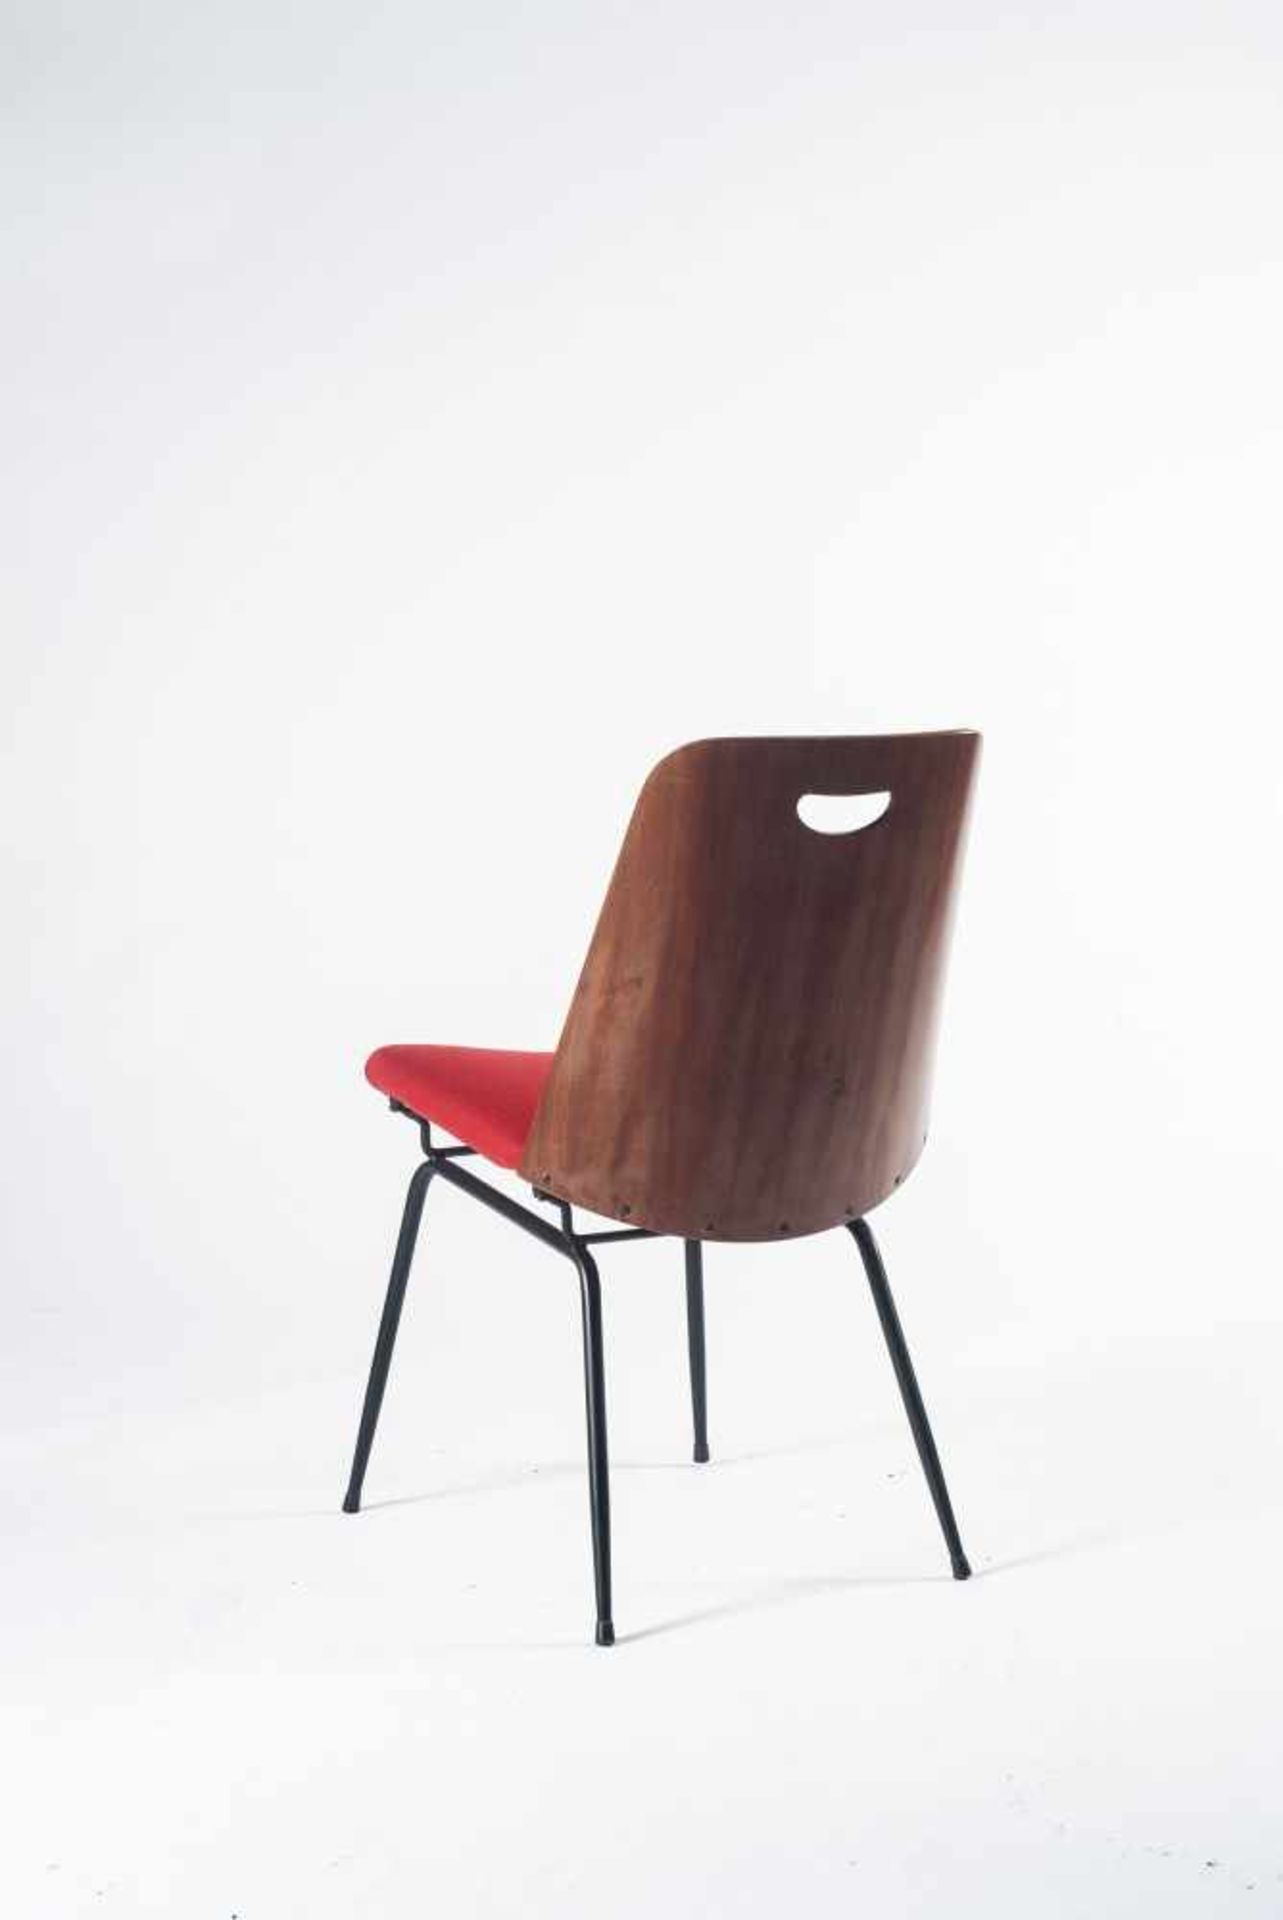 Vier Stühle 'Du 22', um 1952 Gastone Rinaldi H. 80 x 50 x 60 cm. Rima, Padua. Stahlrohr, schwarz - Bild 4 aus 8